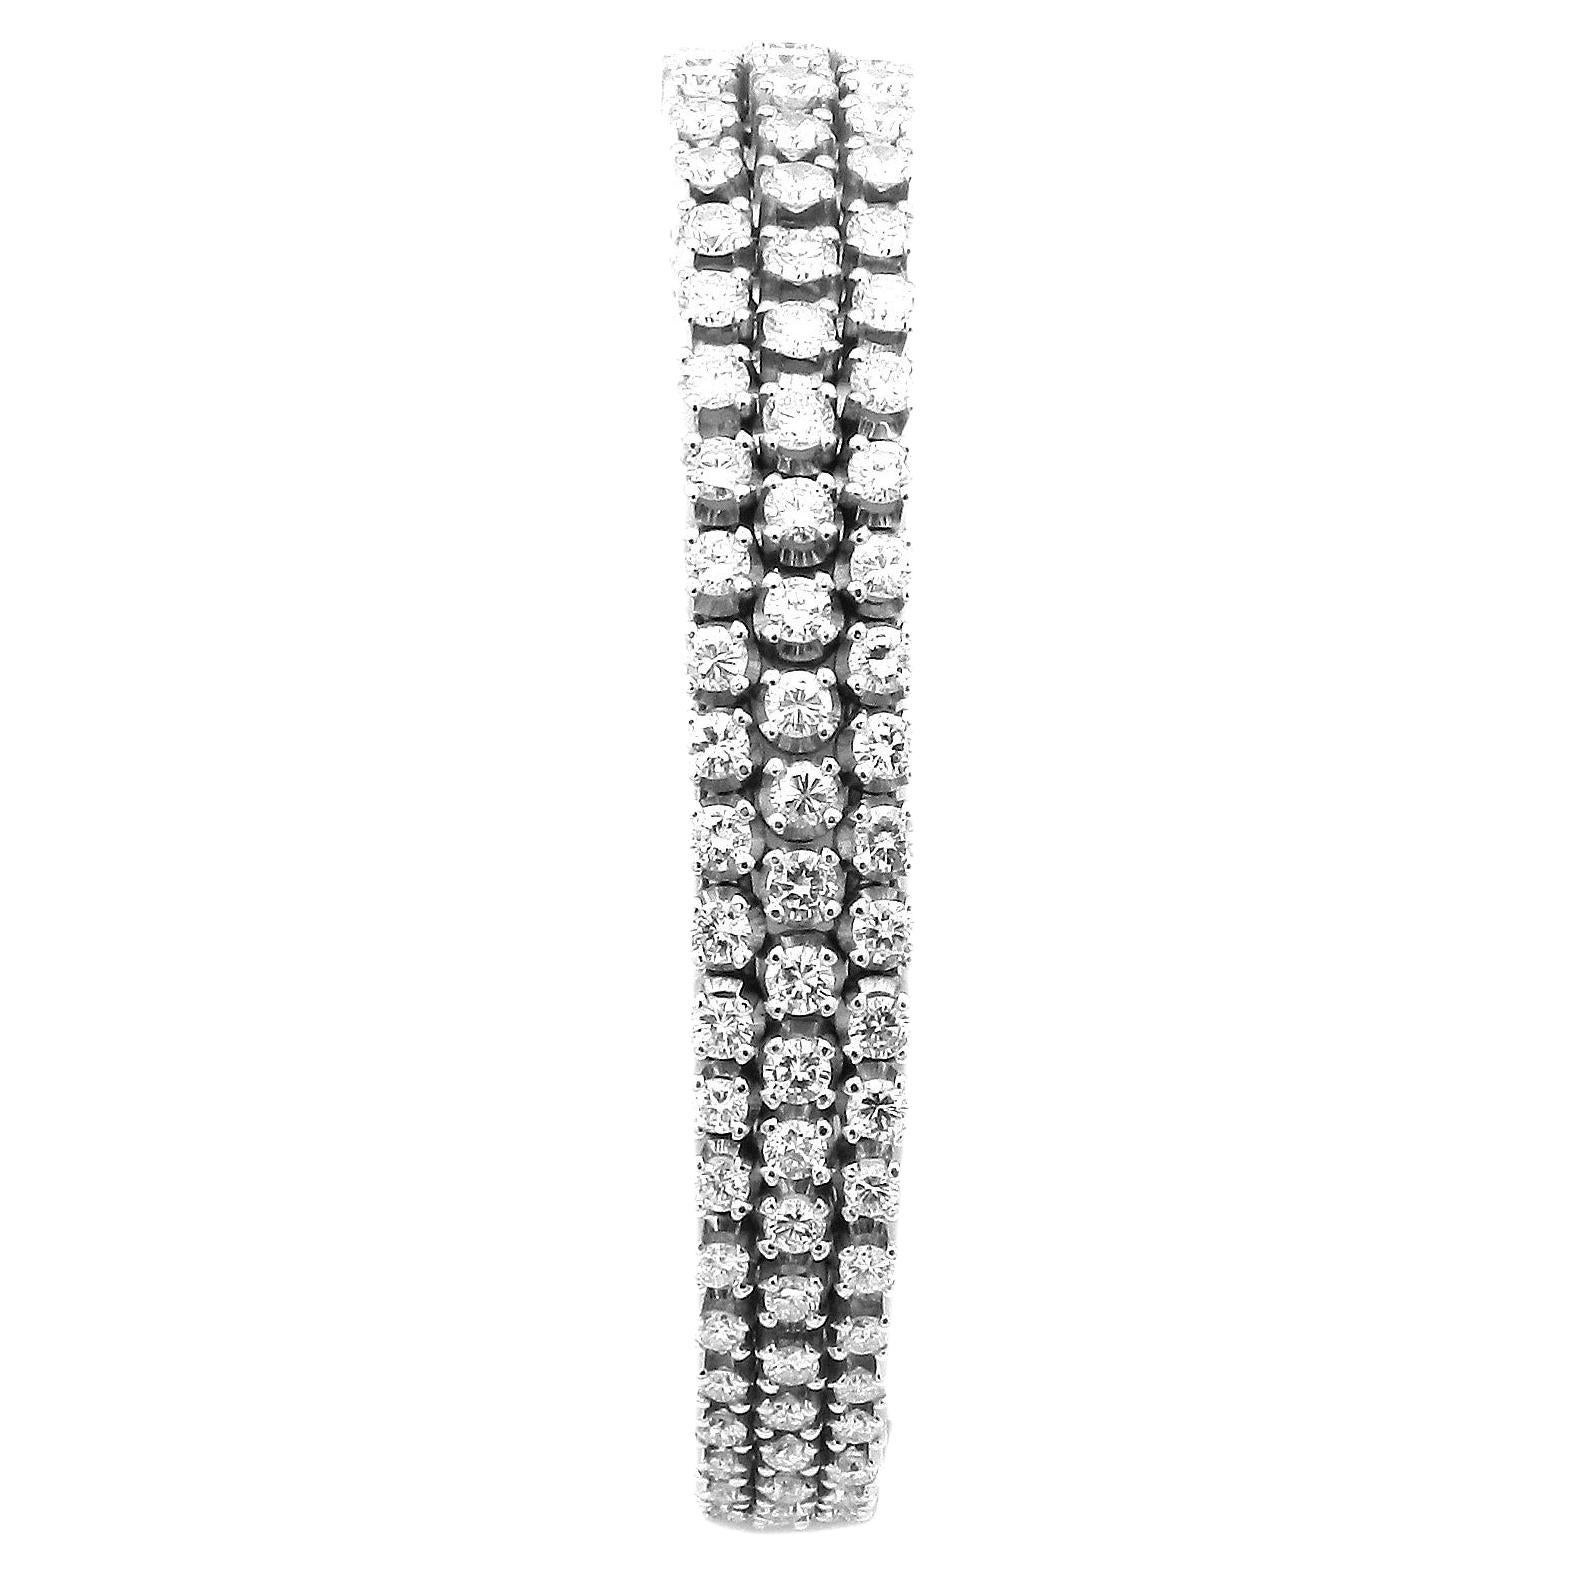 Bracelet Estate 10 Carat Diamond 18K White Gold  

Bracelet classique-élégant en or blanc de haute qualité en trois rangs, entièrement serti de 159 diamants rayonnants de taille brillant avec un total d'environ 9,91 ct.

 

750/ or blanc 18K
159